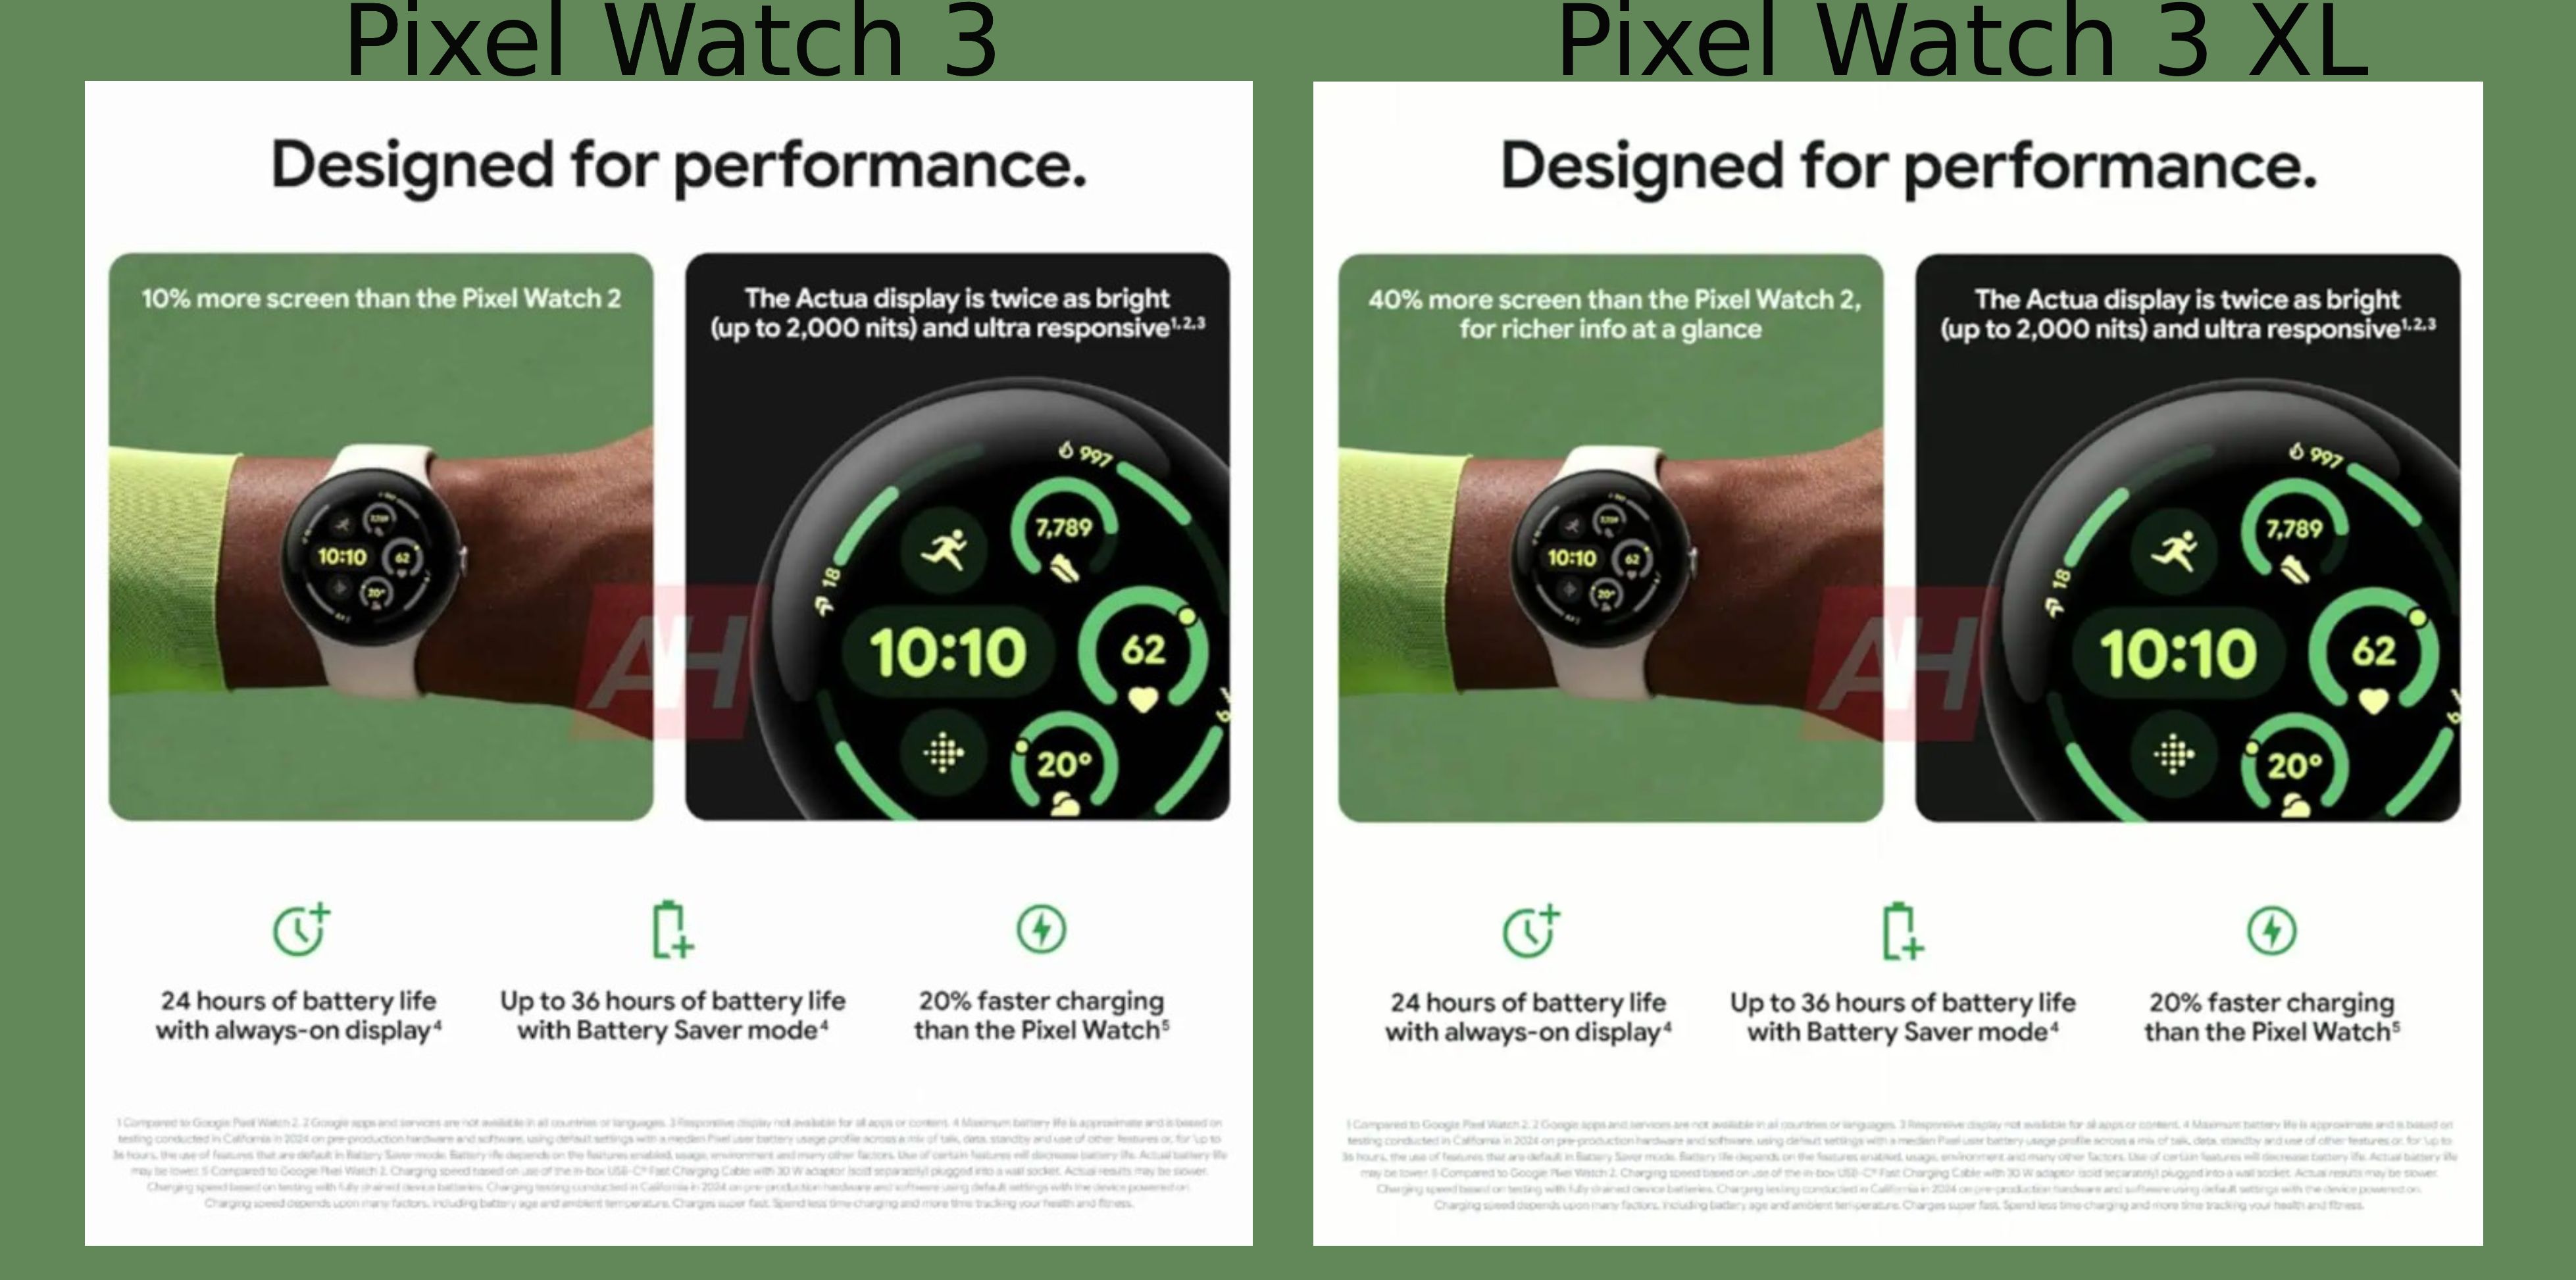 Material de marketing para o Pixel Watch 3 e Pixel Watch 3 XL. Ele sugere que os wearables terão uma tela 10% e 40% maior, respectivamente, quando comparados ao Pixel Watch 2.